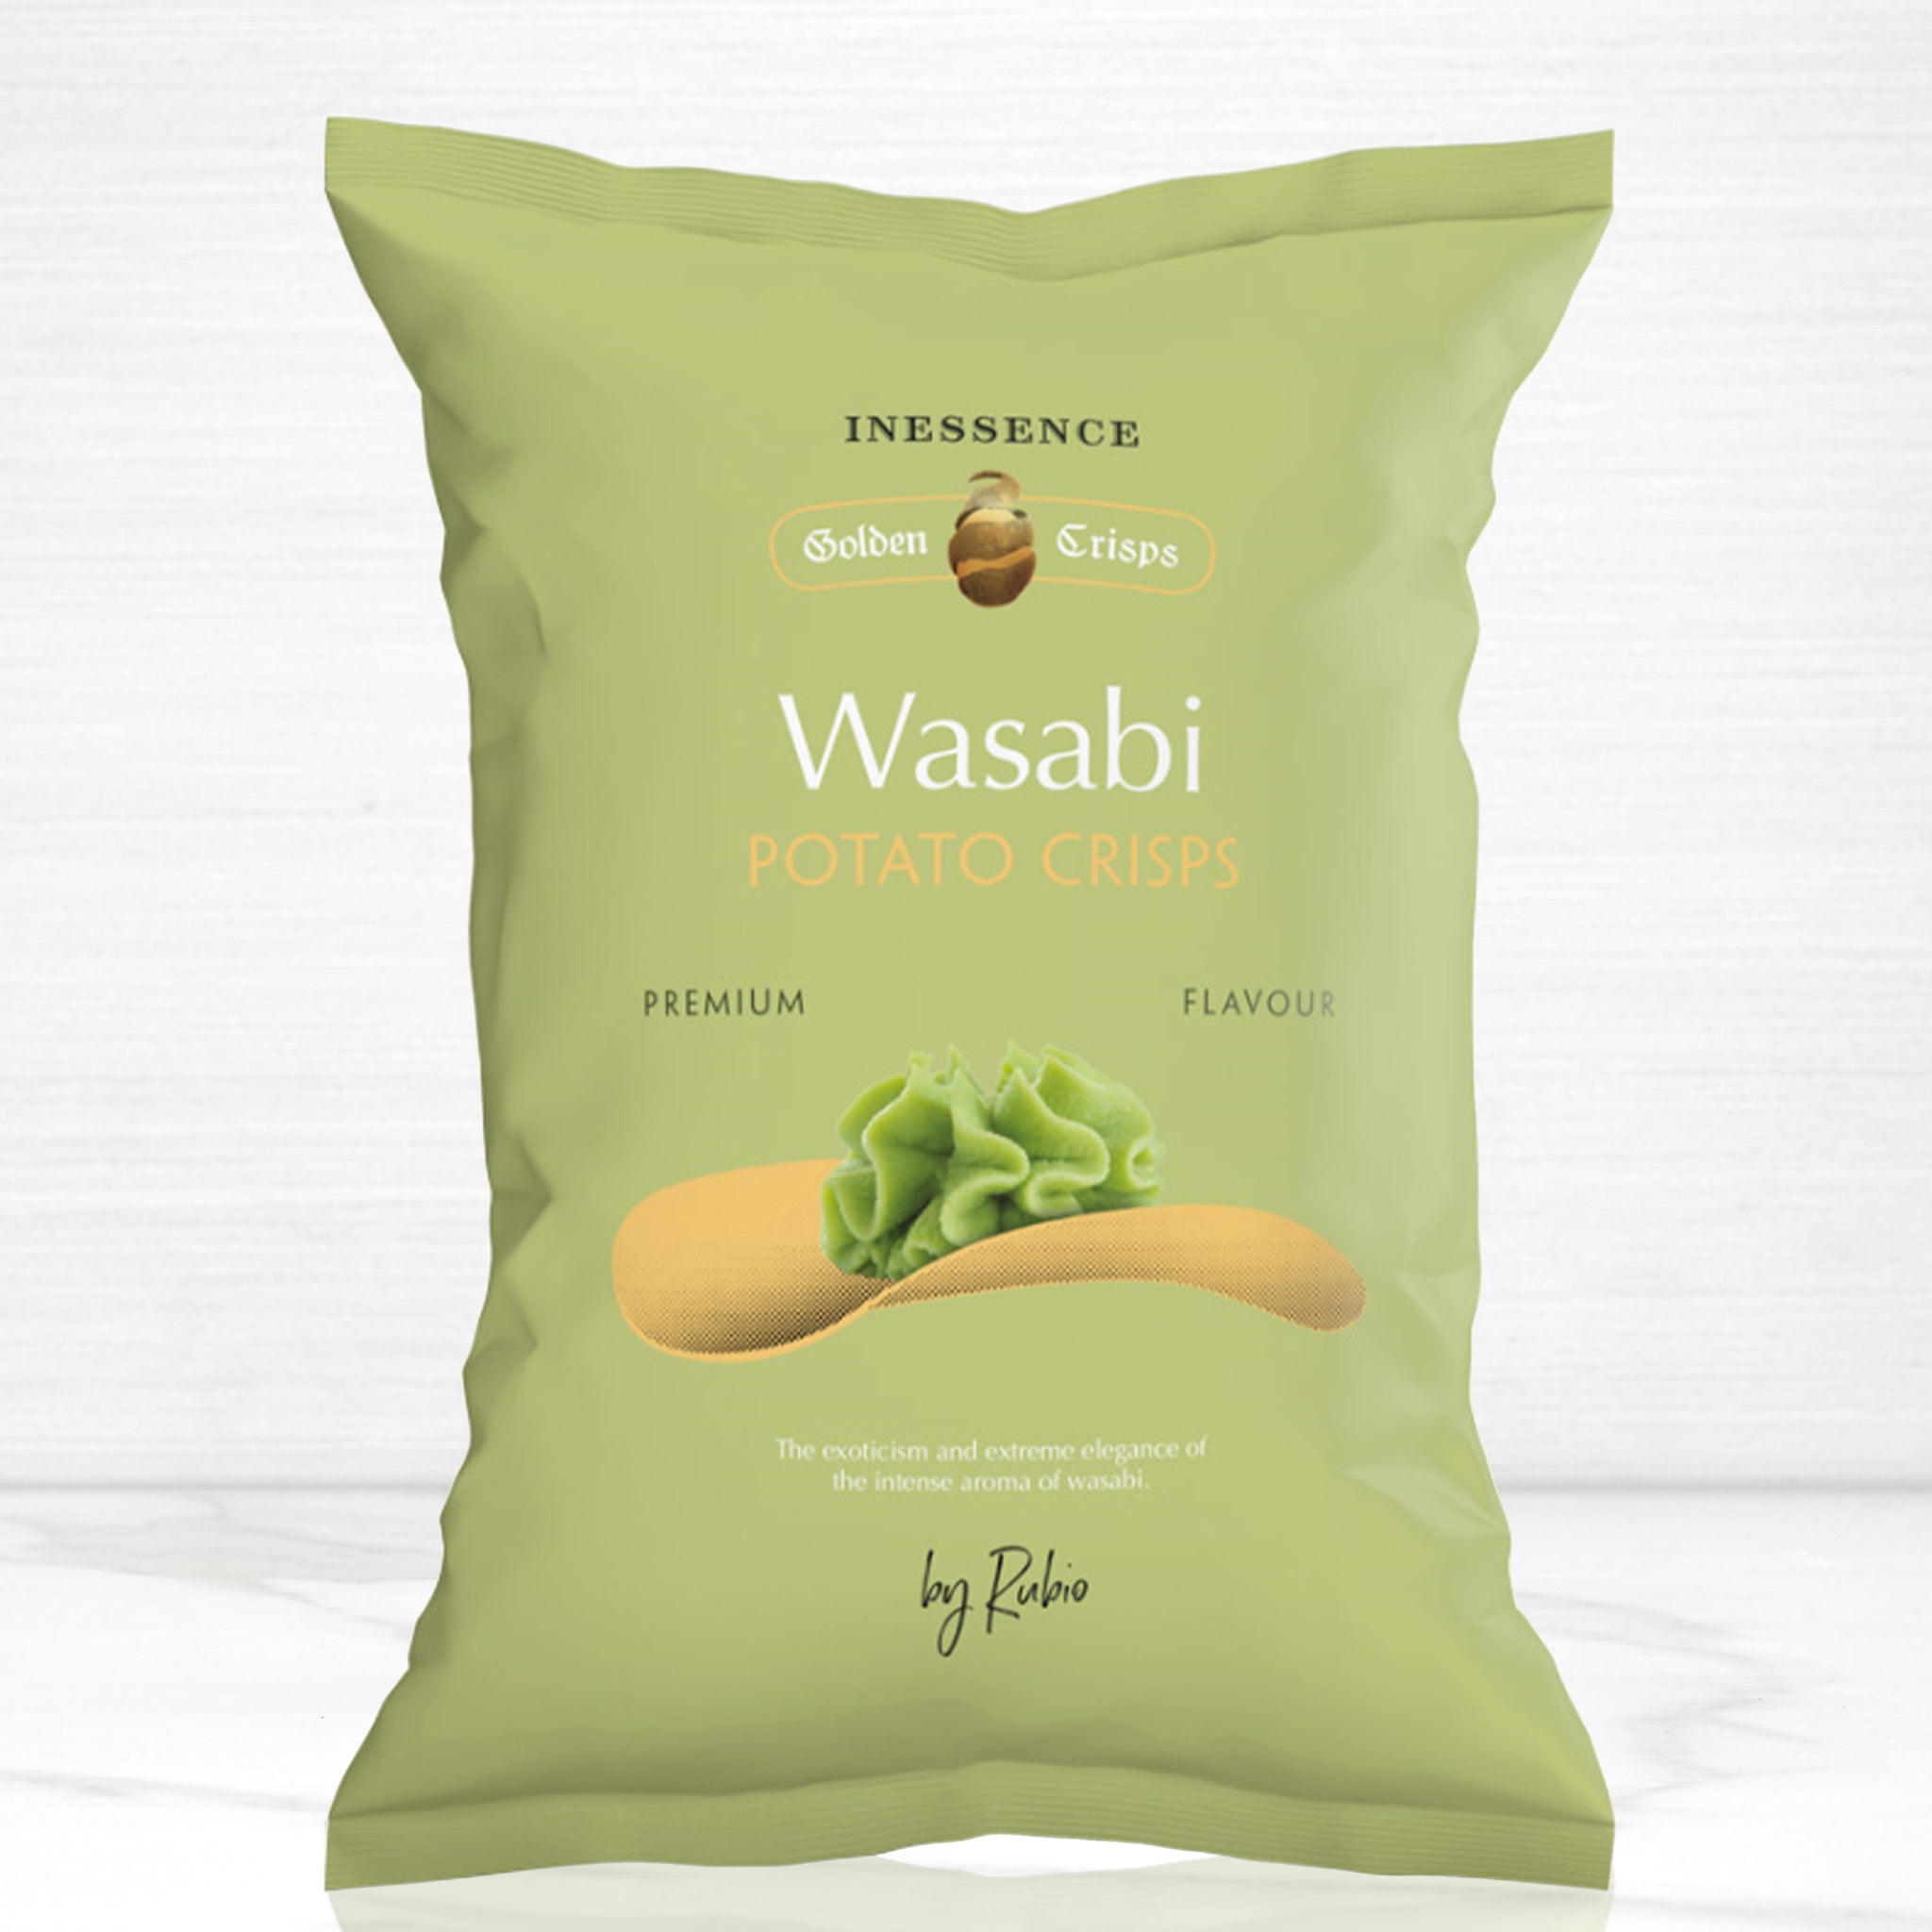 Wasabi Knives Reviews  Read Customer Service Reviews of wasabi